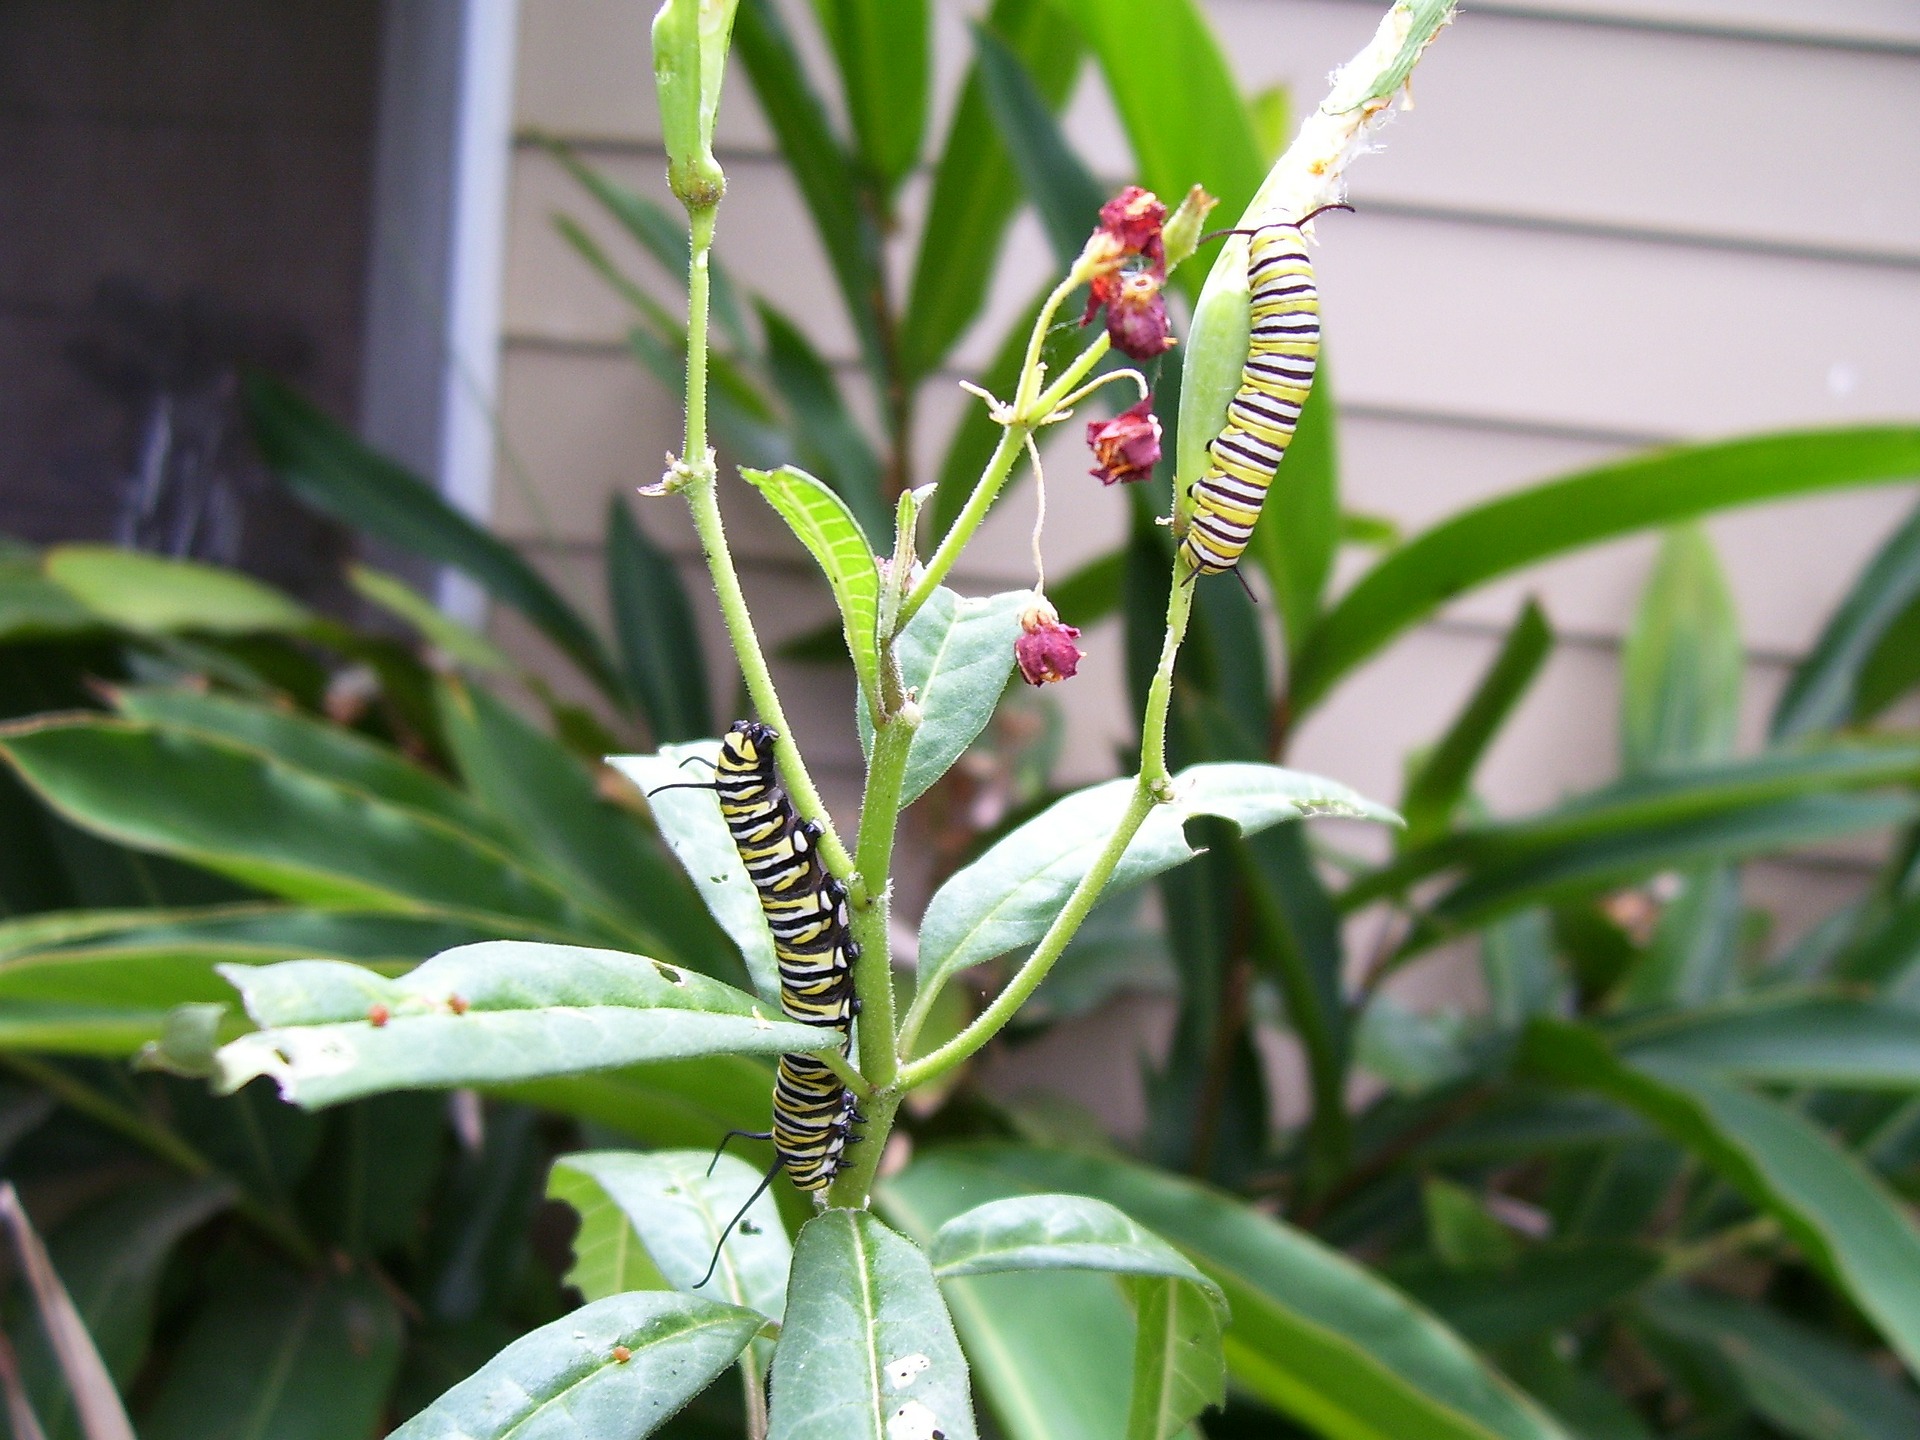 monarch caterpillars on milkweed